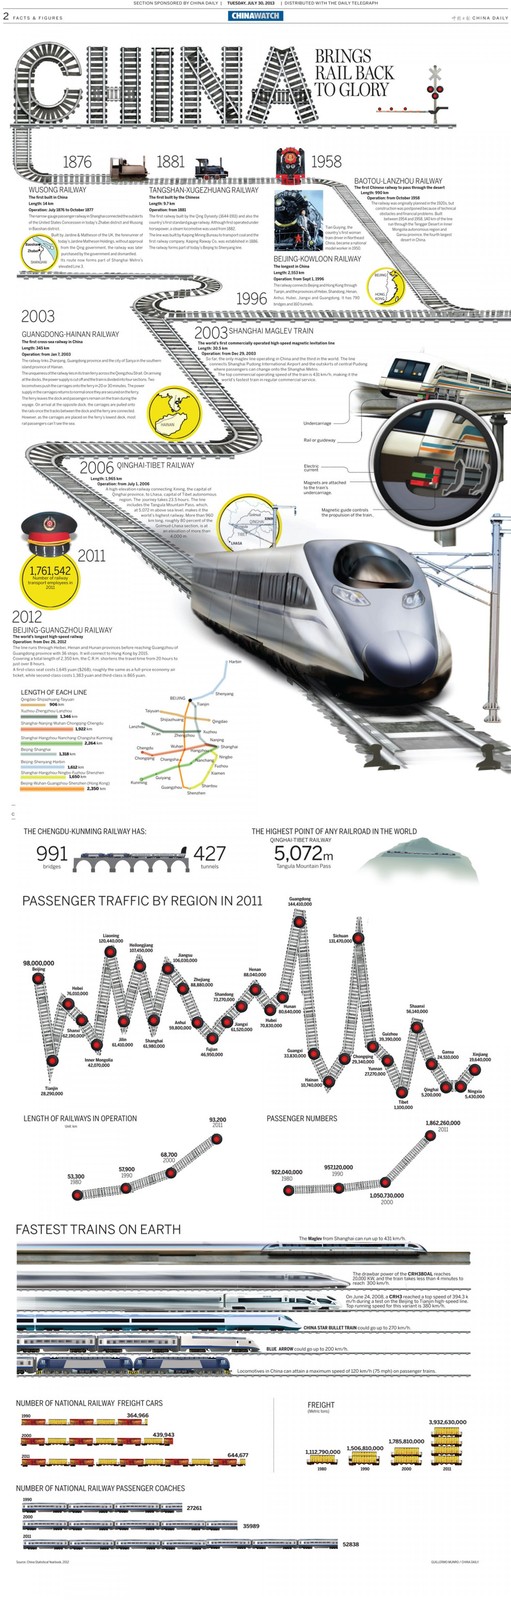 china-brings-back-the-glory-to-the-rail_51f8f9c5b3f99_w1500.jpg